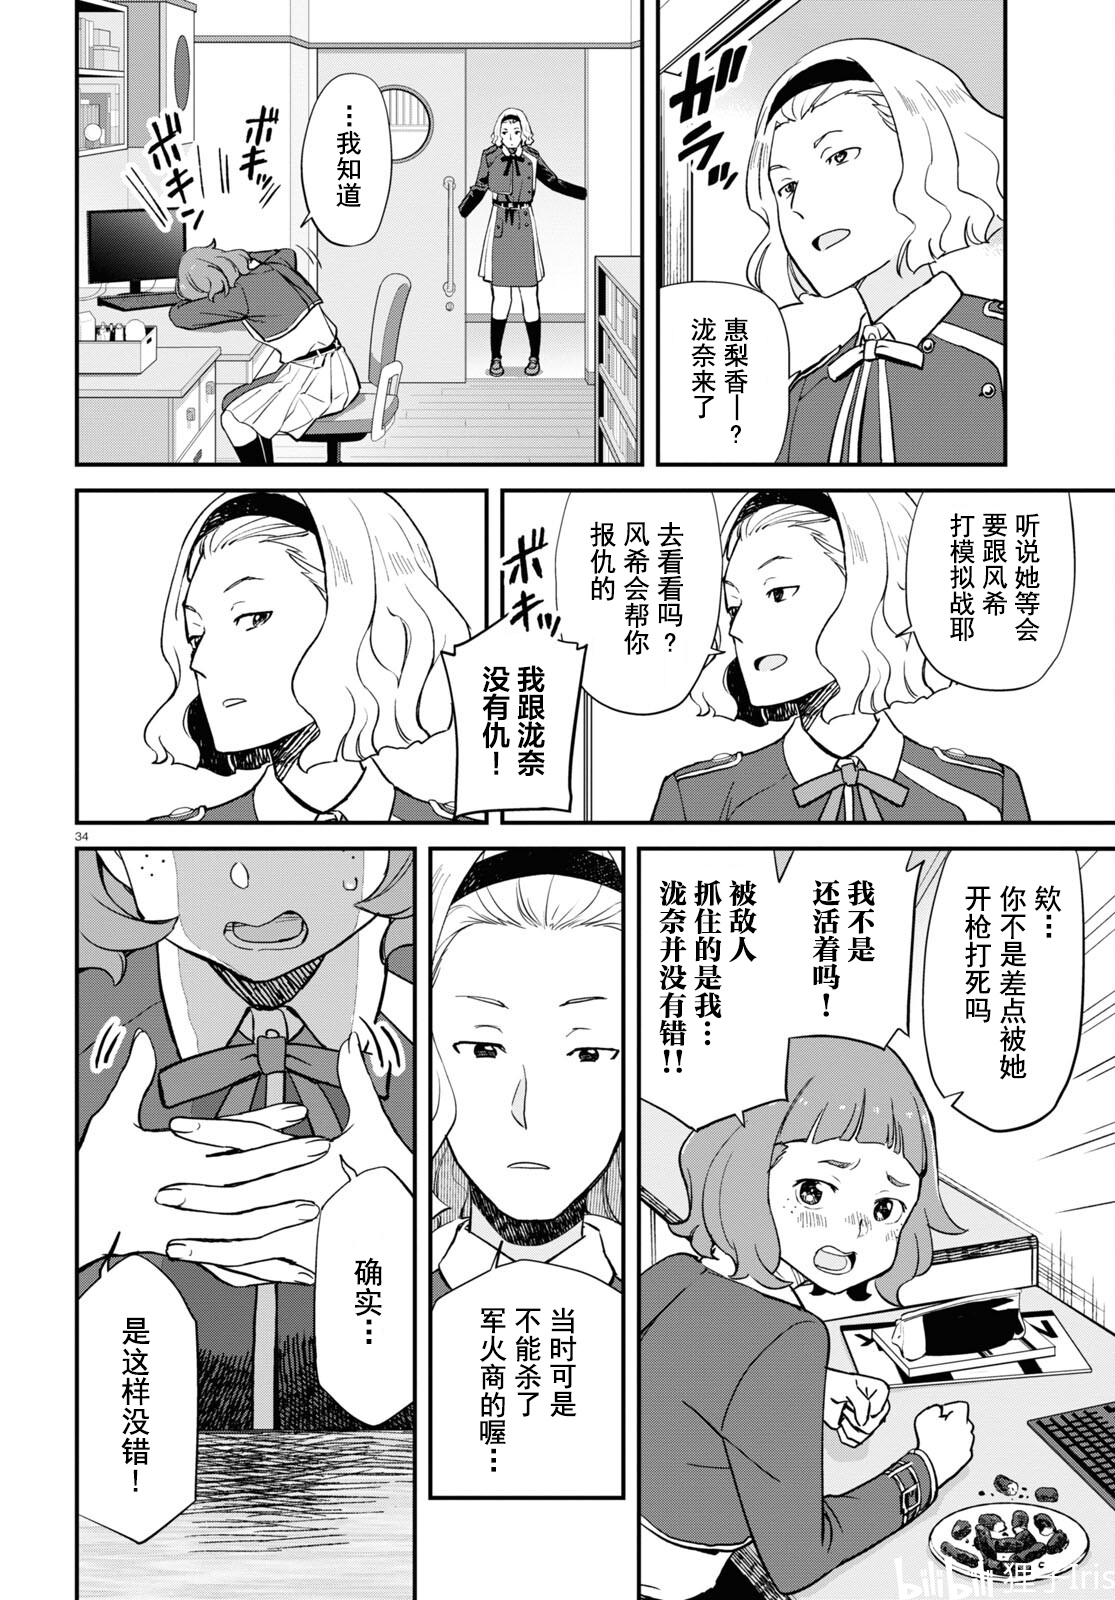 【小分队汉化】第8话 官方剧情篇漫画 LycorisRecoil莉可丽丝